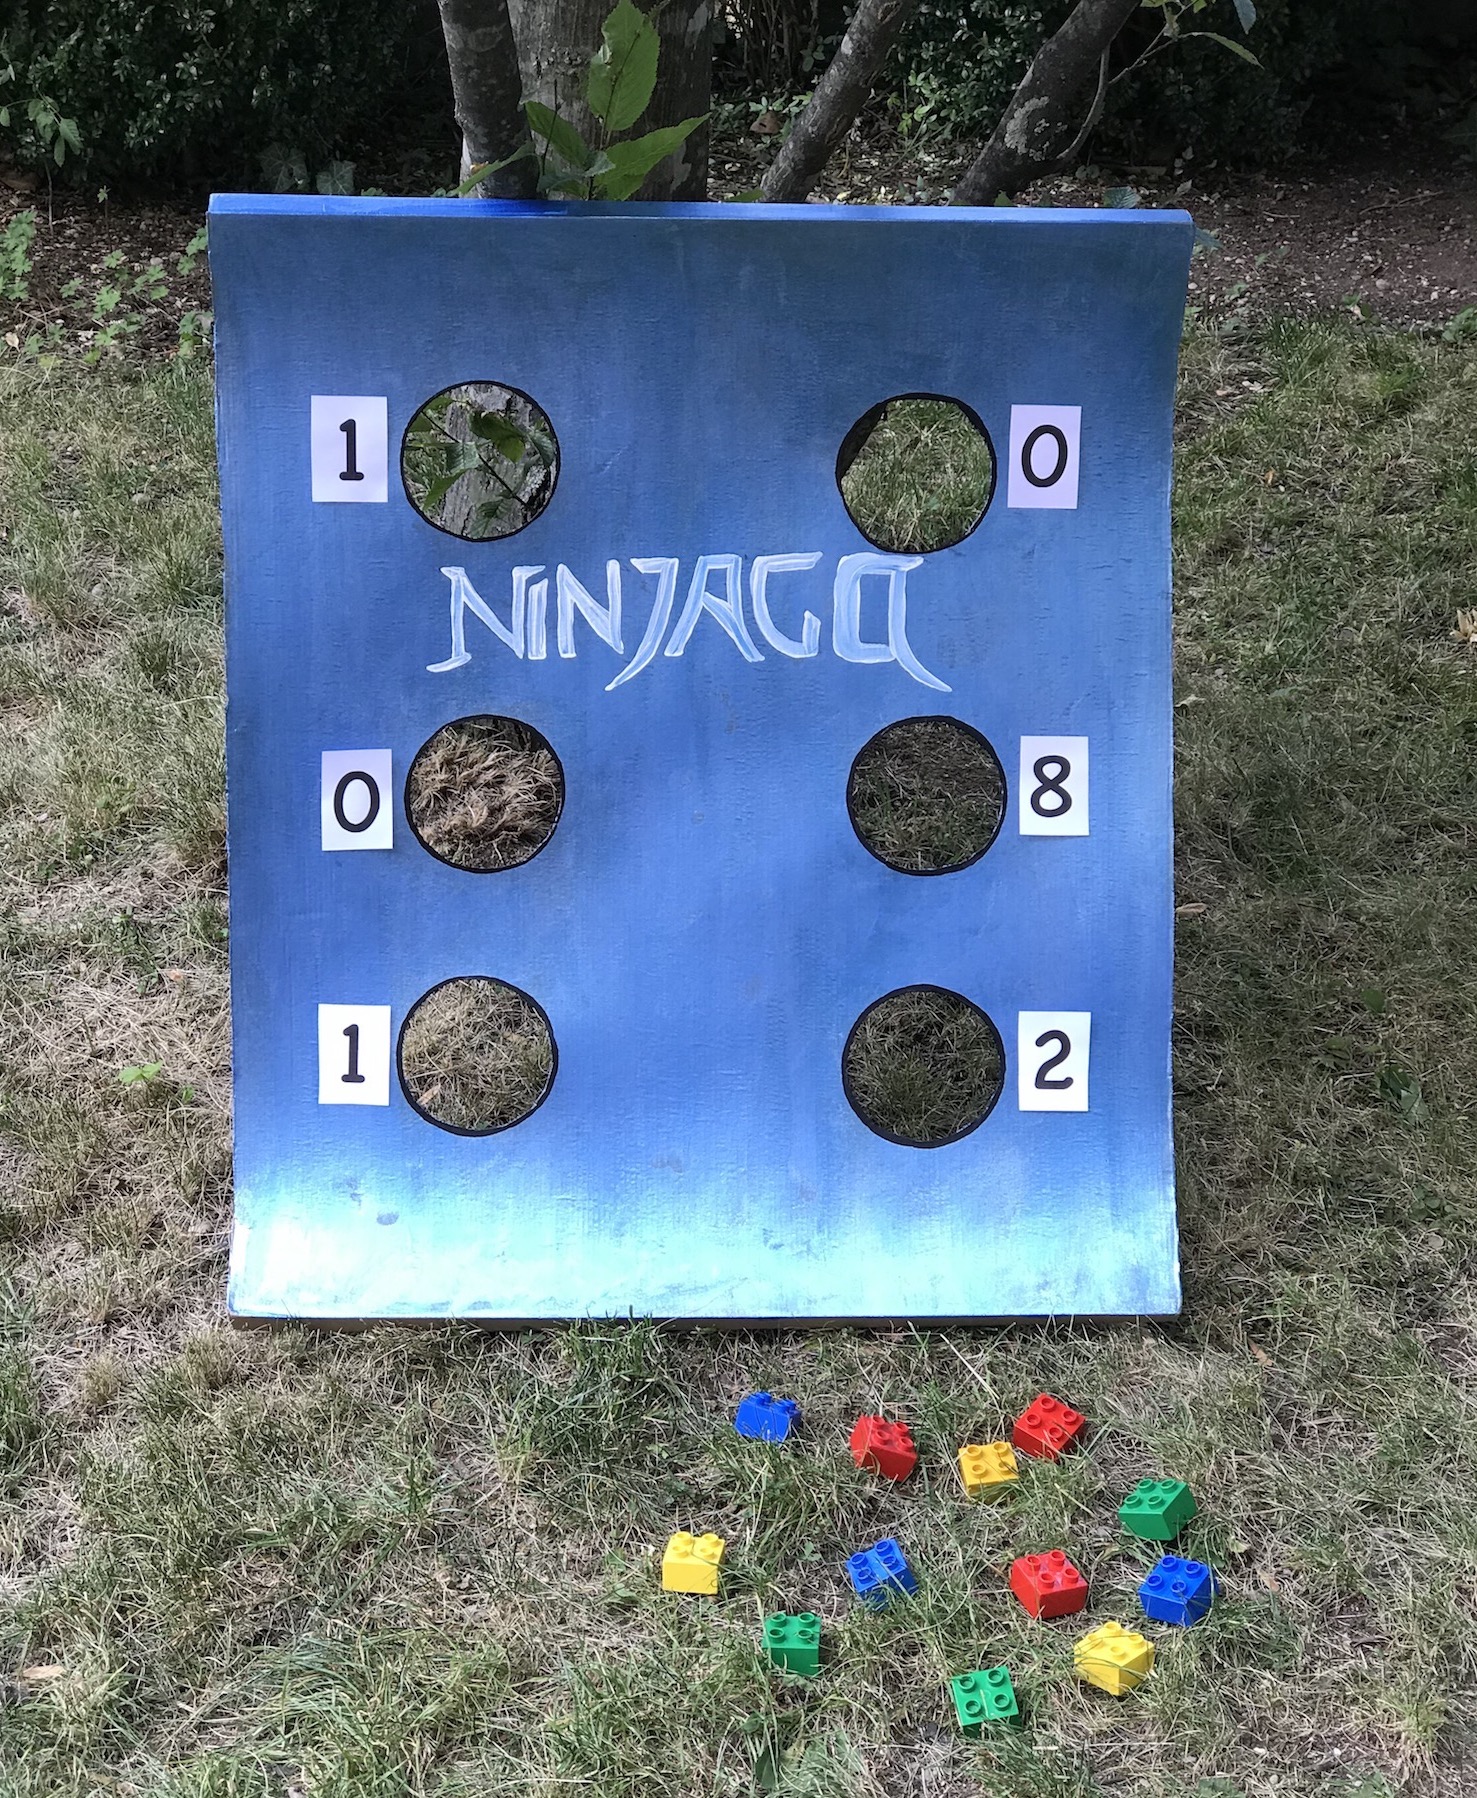 ninjago-spiel-idee-wurfspiel-aus-karton-kindergeburtstag-nachhaltig-feiern